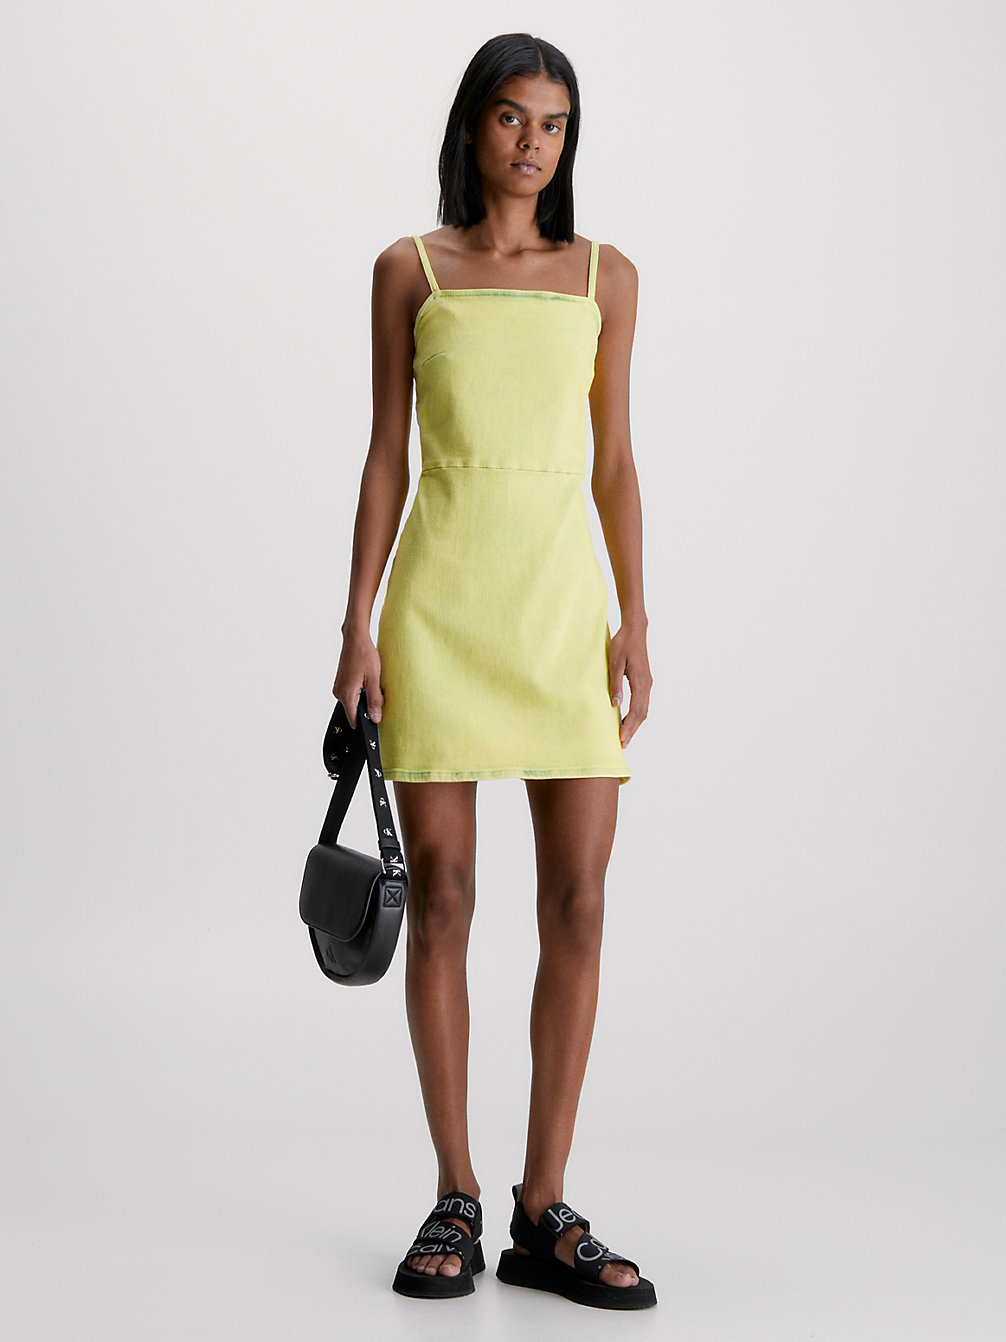 DENIM MEDIUM Fitted Denim Mini Dress undefined women Calvin Klein